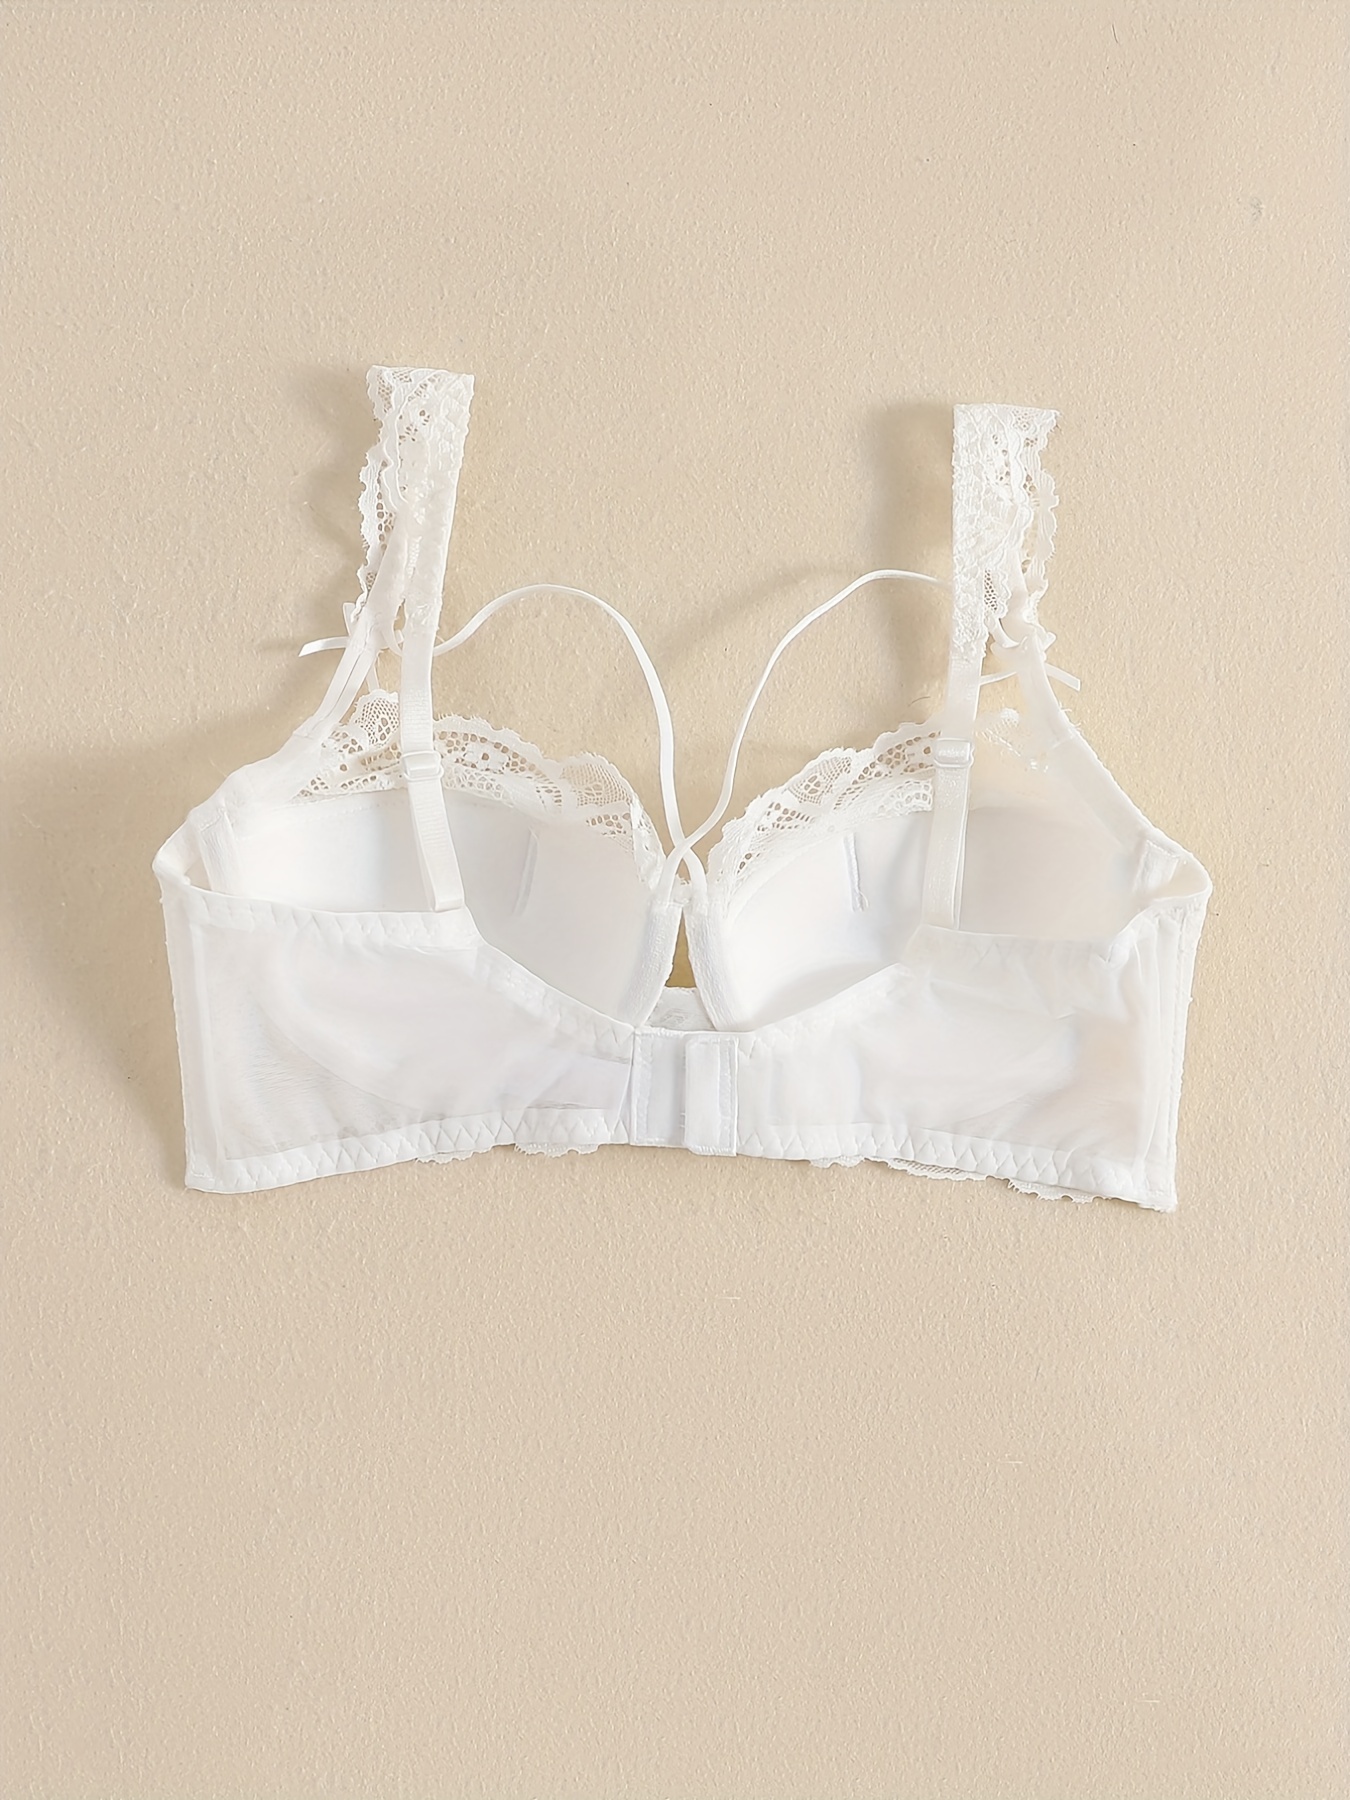 Plus Size Women Underwear Bra & Briefs Set White Sexy Lace